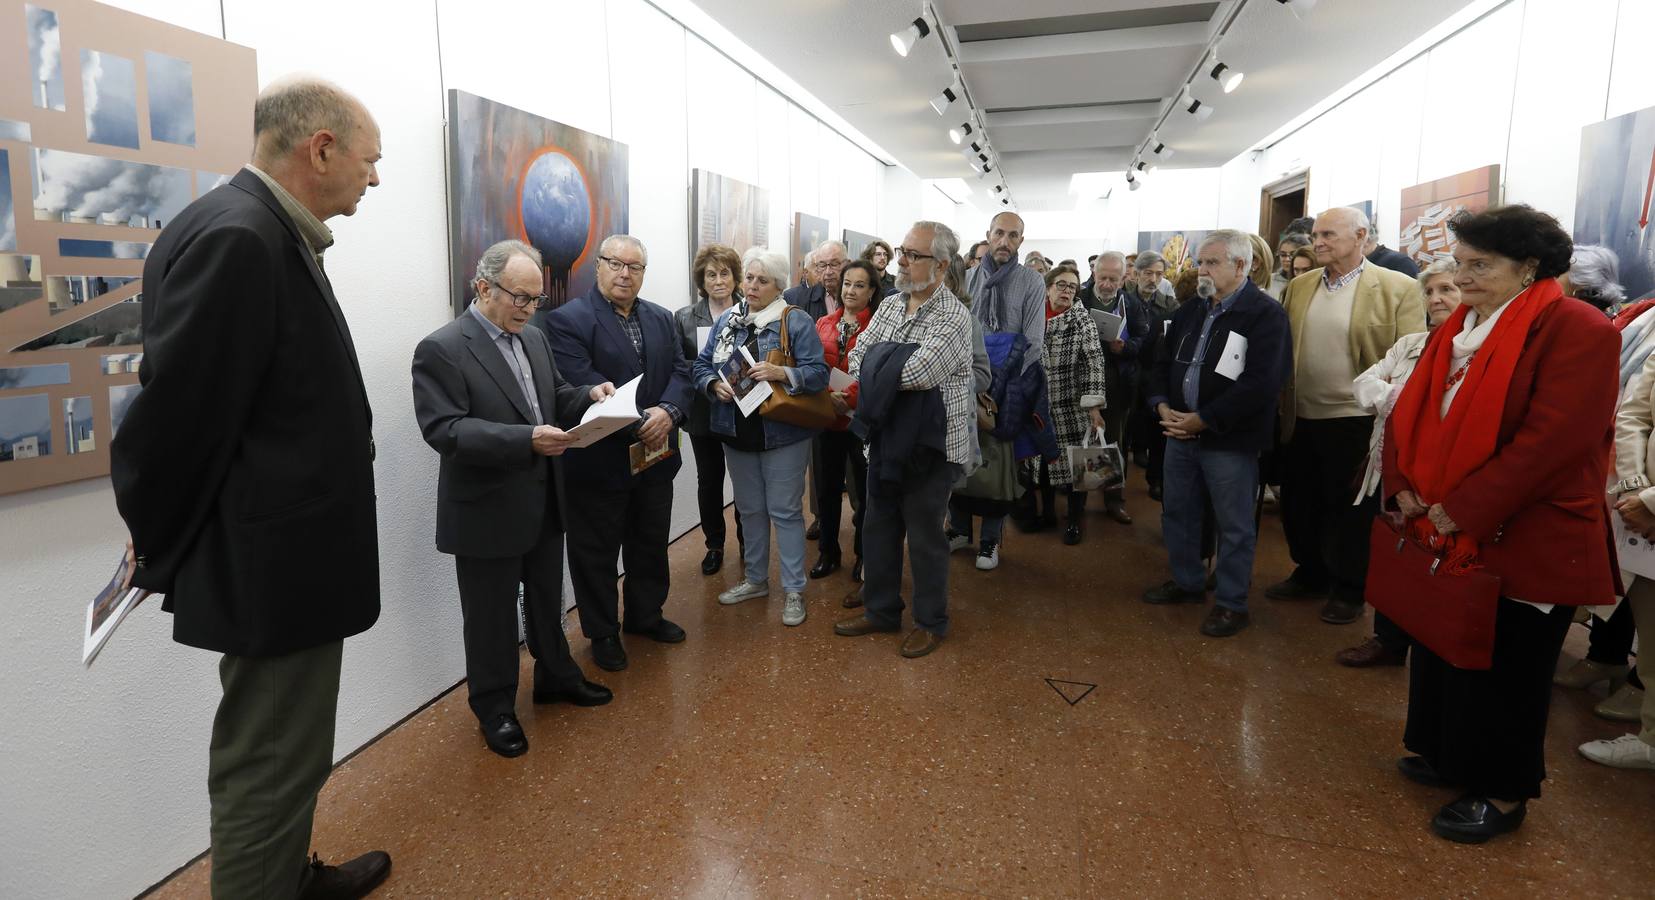 La exposición de Antonio Bujalance en Córdoba, en imágenes